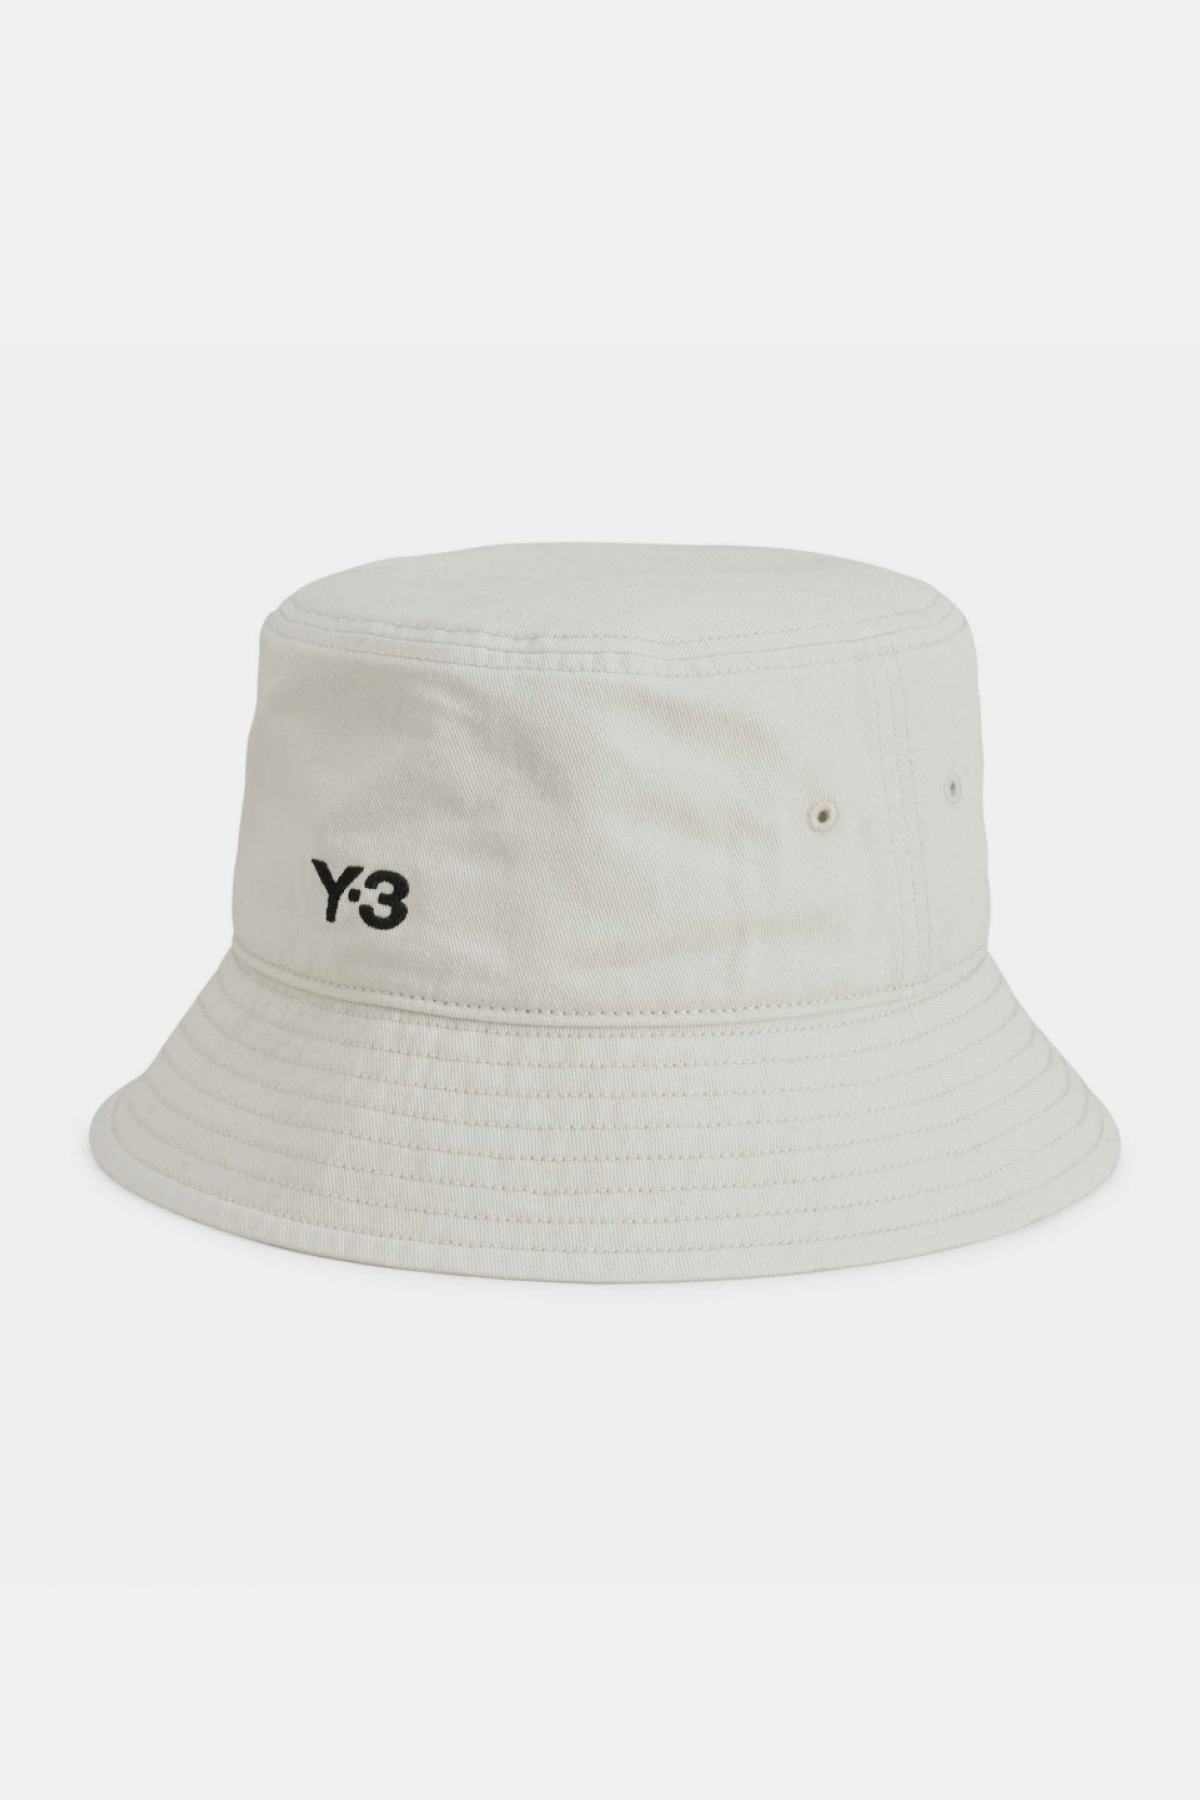 Y-3 Bucket Hat - Talc